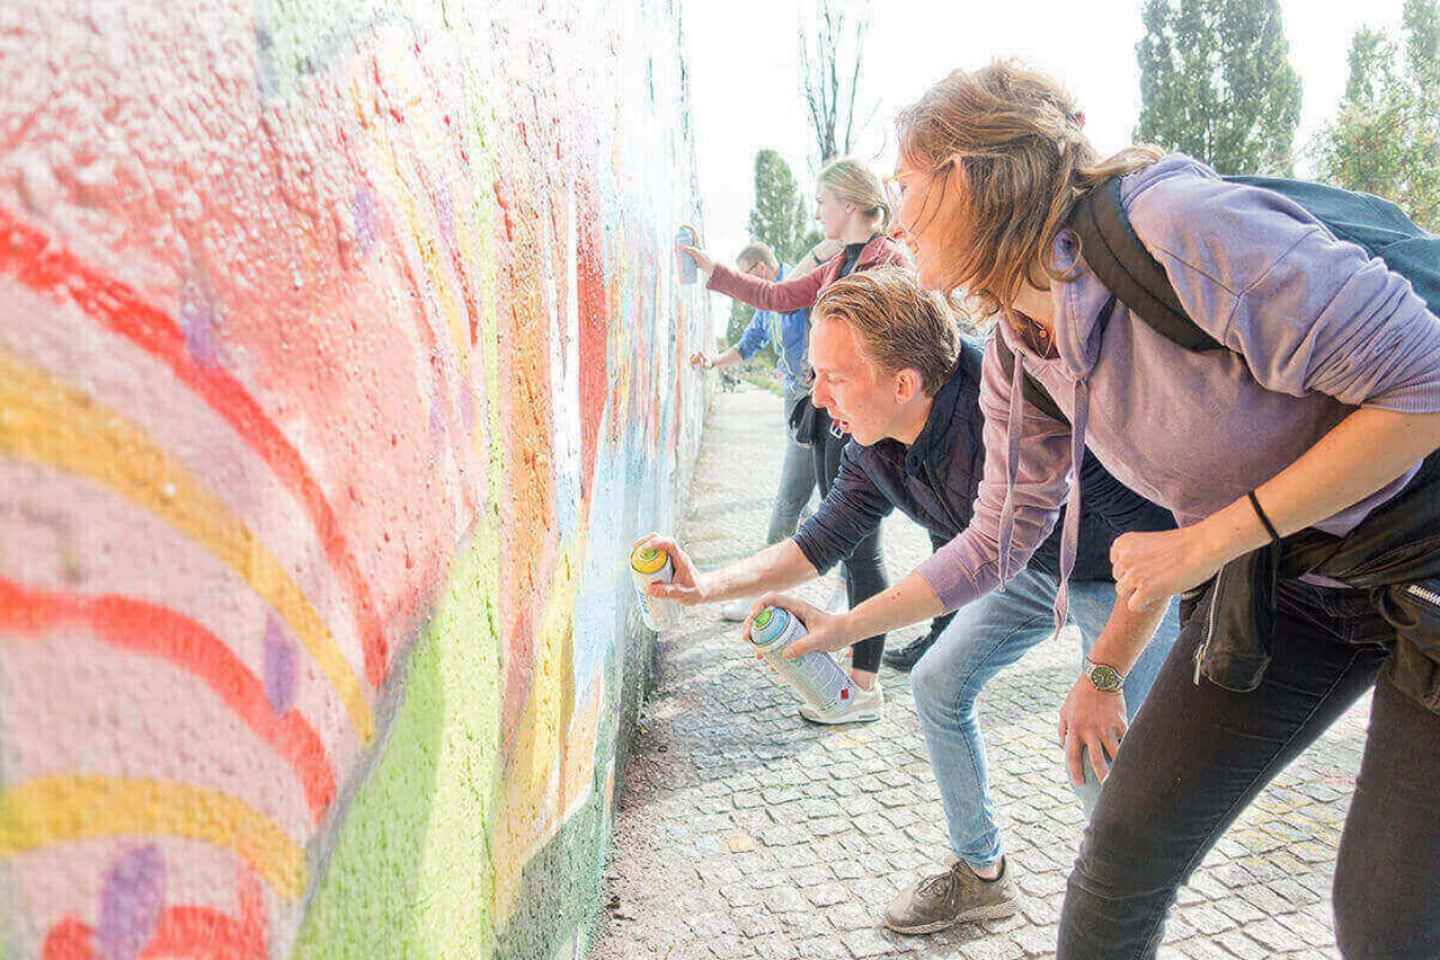 Berlin: Graffiti-Workshop an der Berliner Mauer